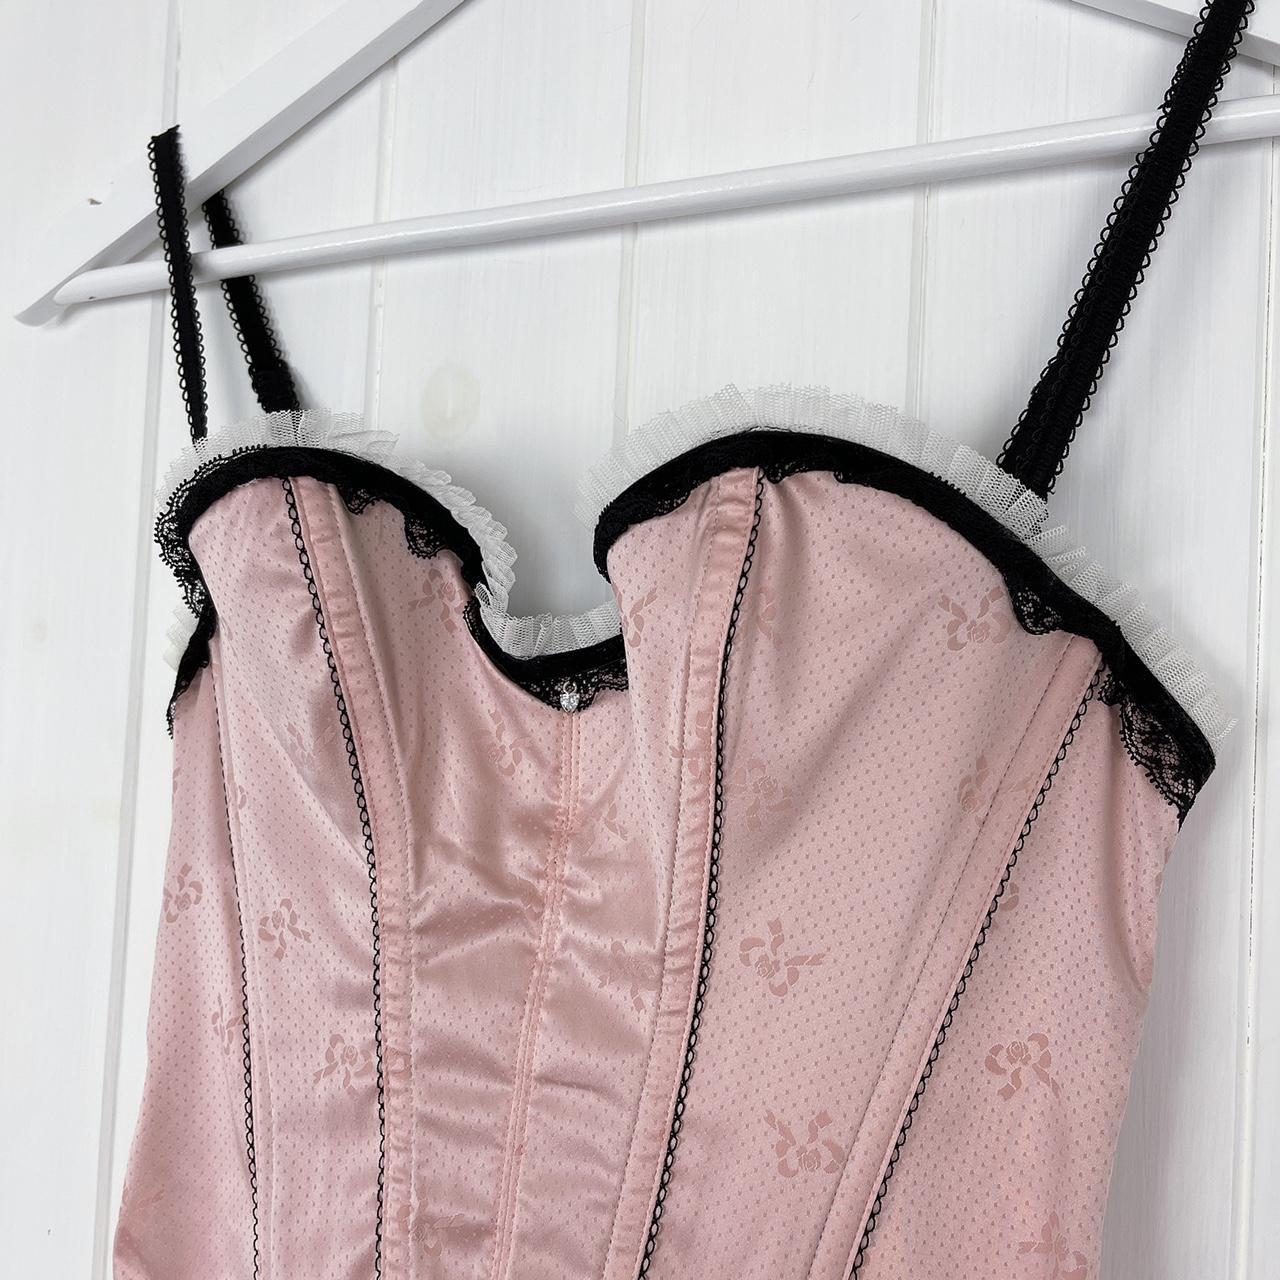 early 00s baby pink corset top, satin look bustier - Depop